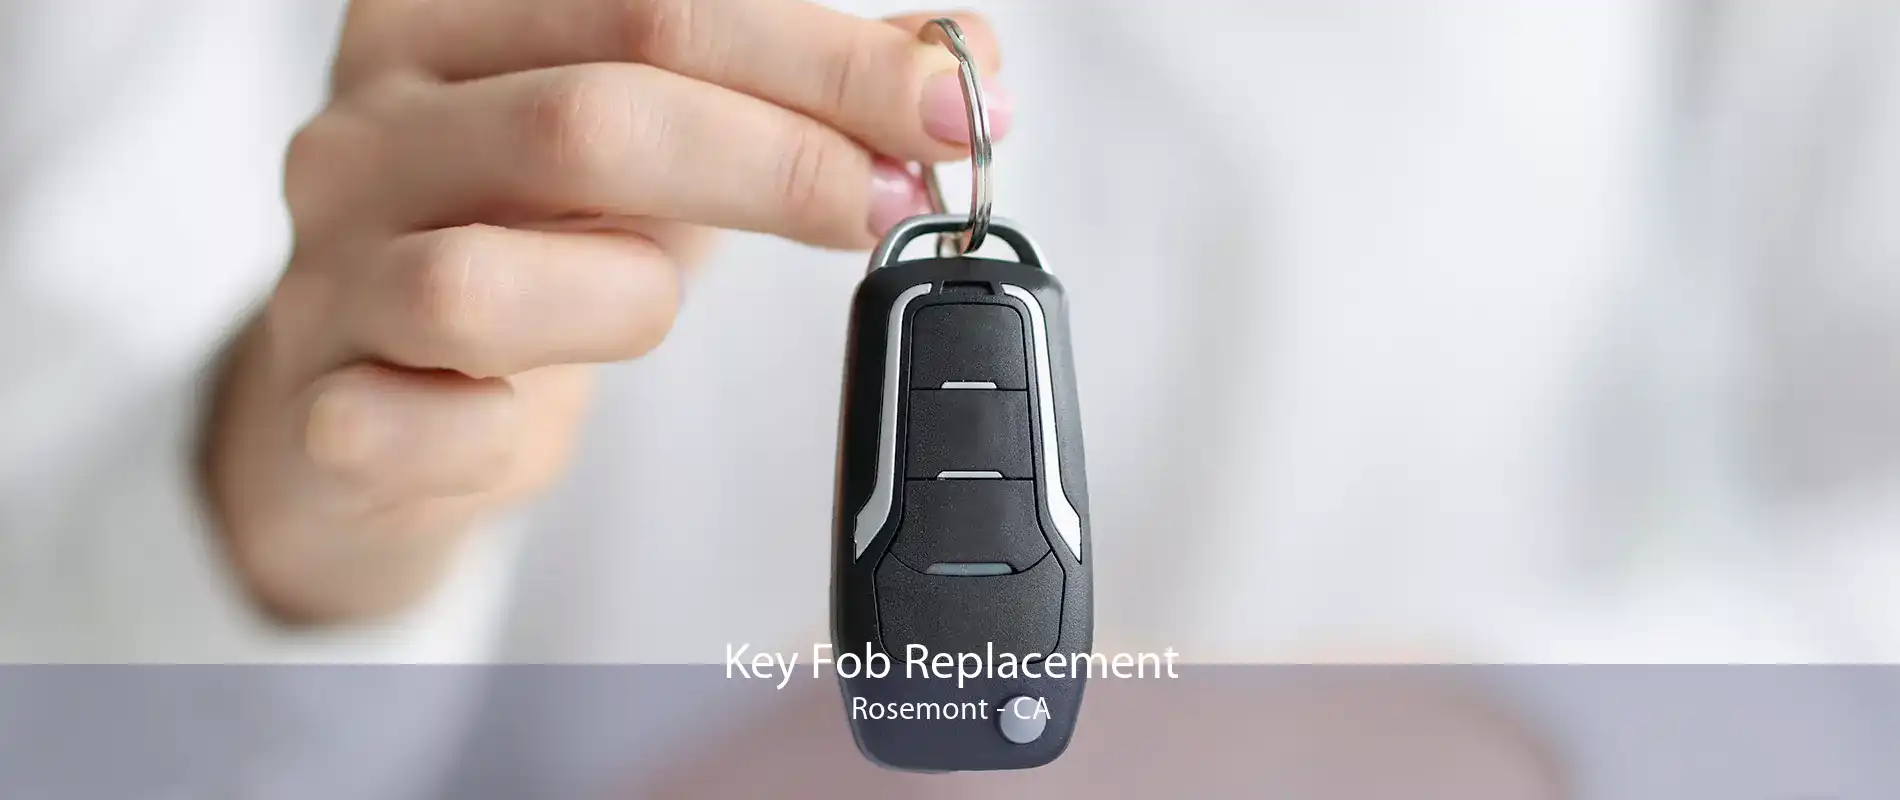 Key Fob Replacement Rosemont - CA